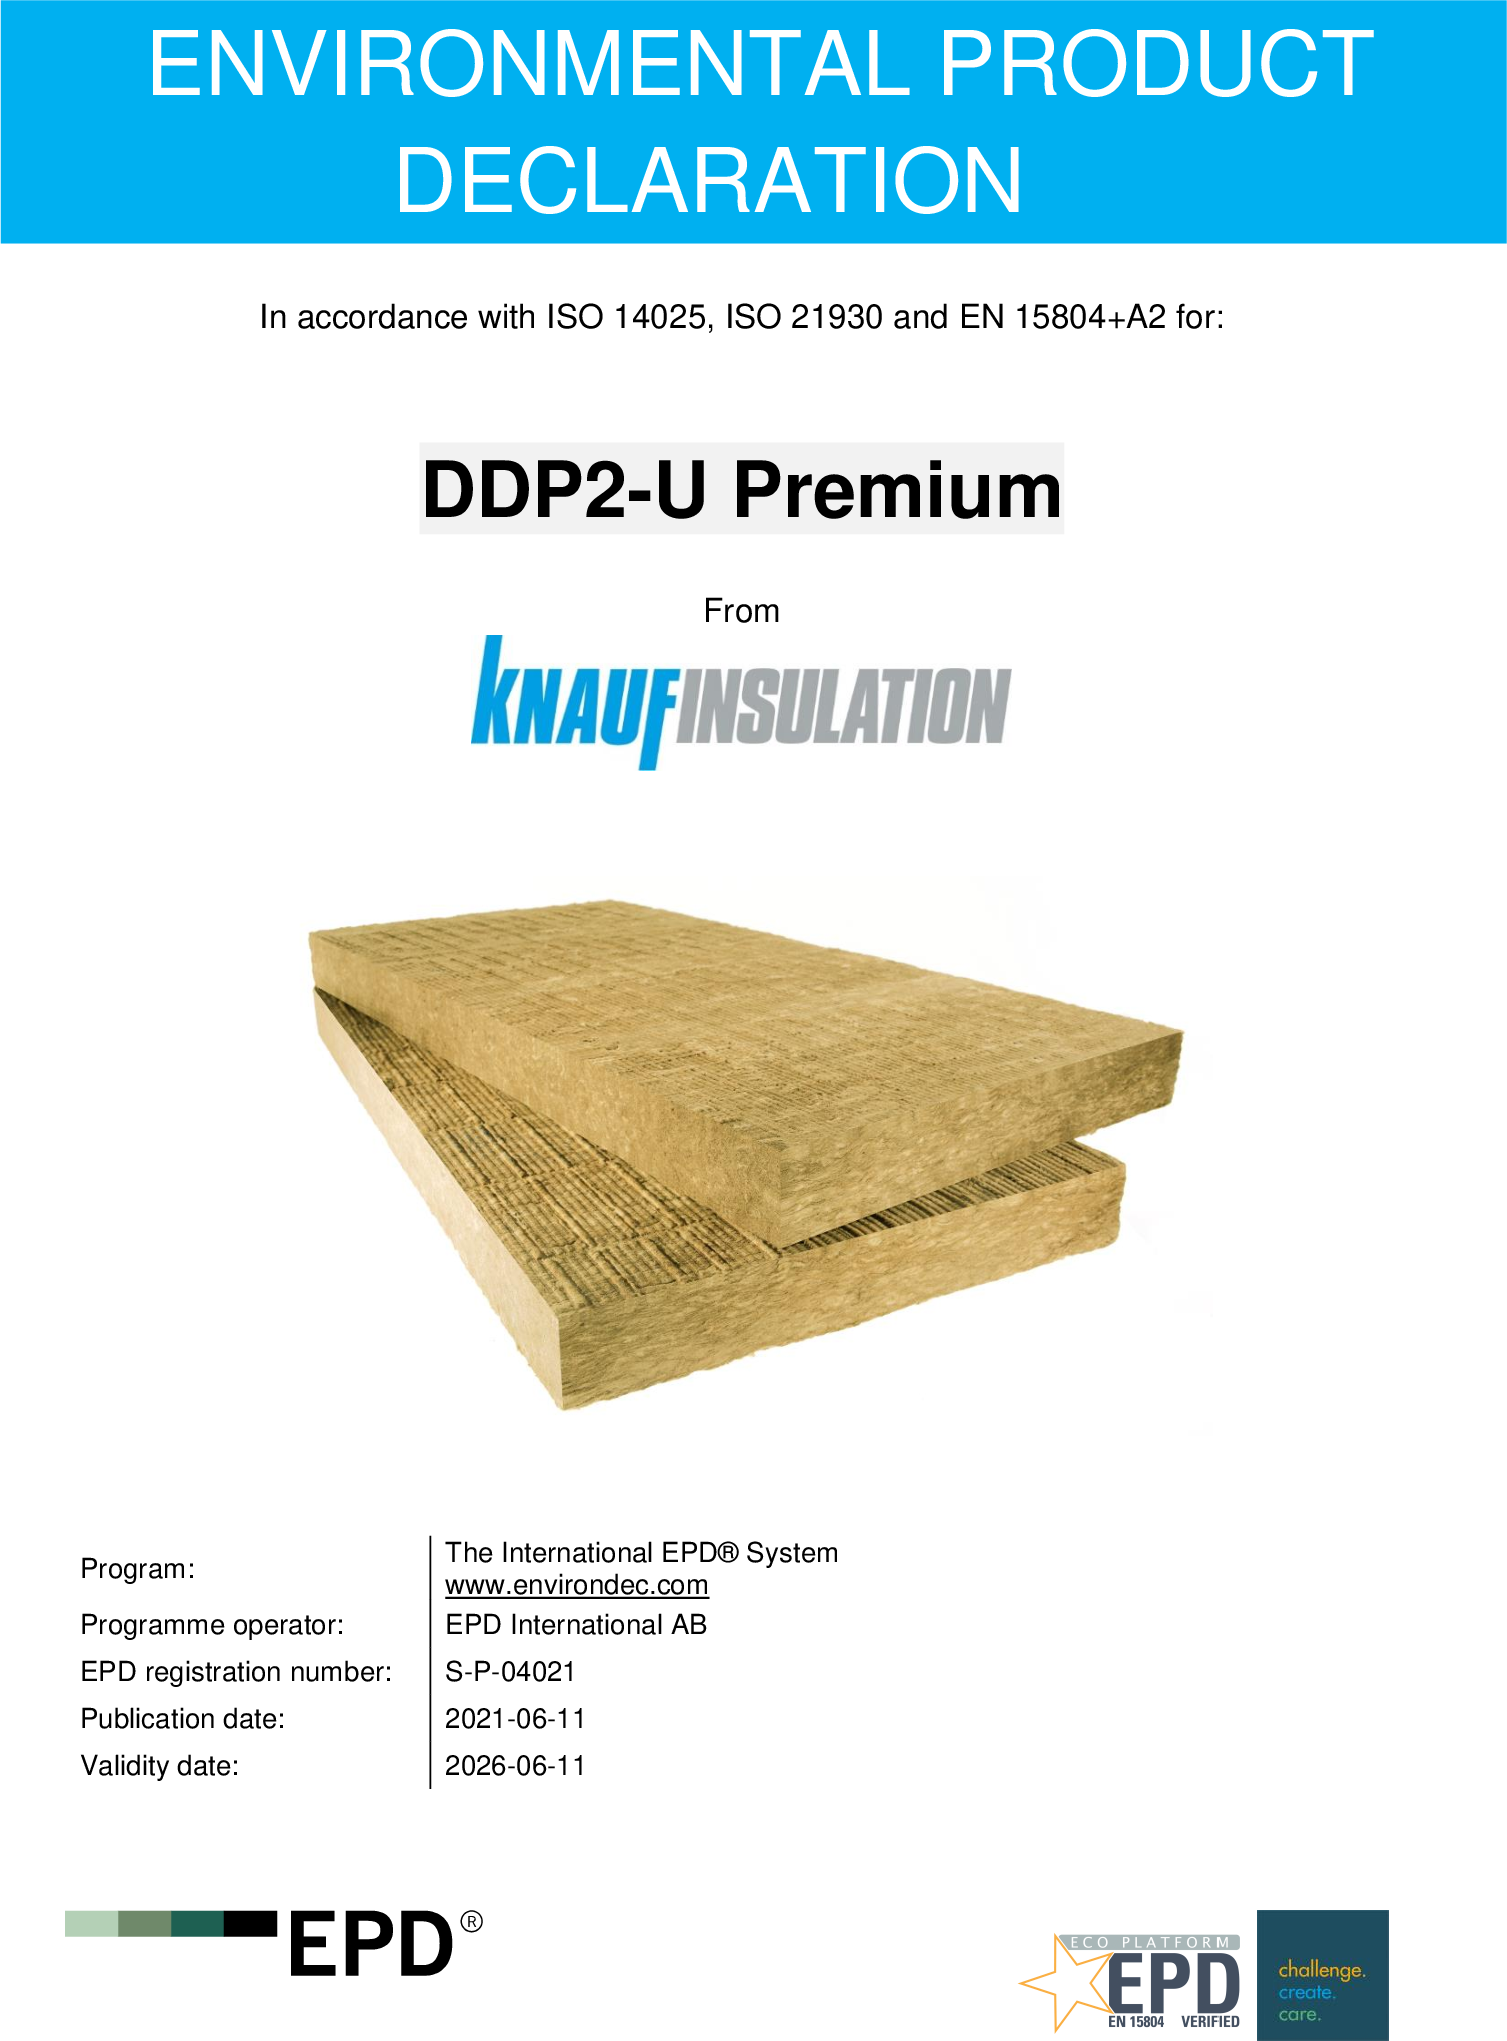 DDP2-U Premium